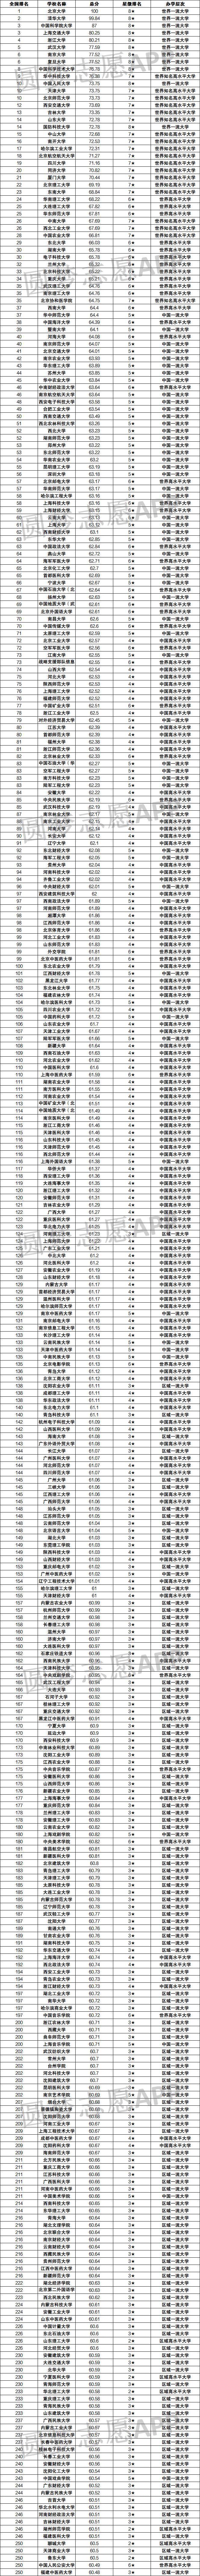 2022年全国大学排名表最新排名-中国大学排名完整版